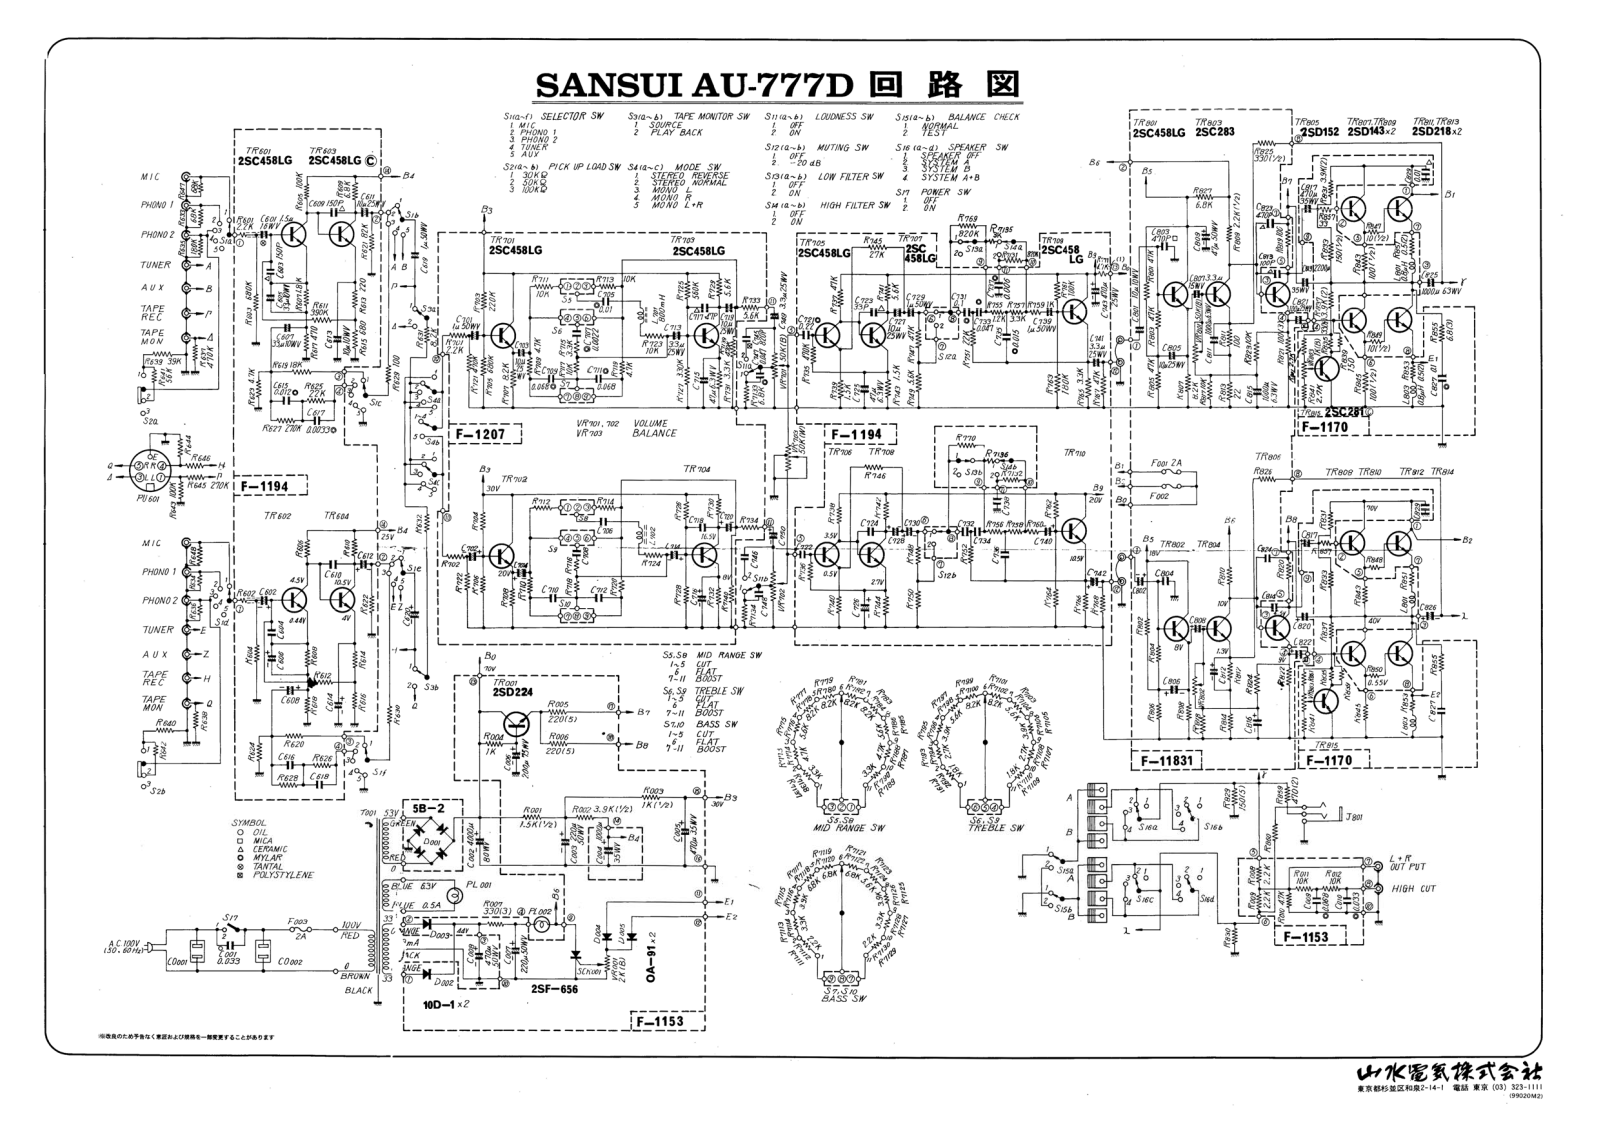 Sansui AU-777-D Schematic